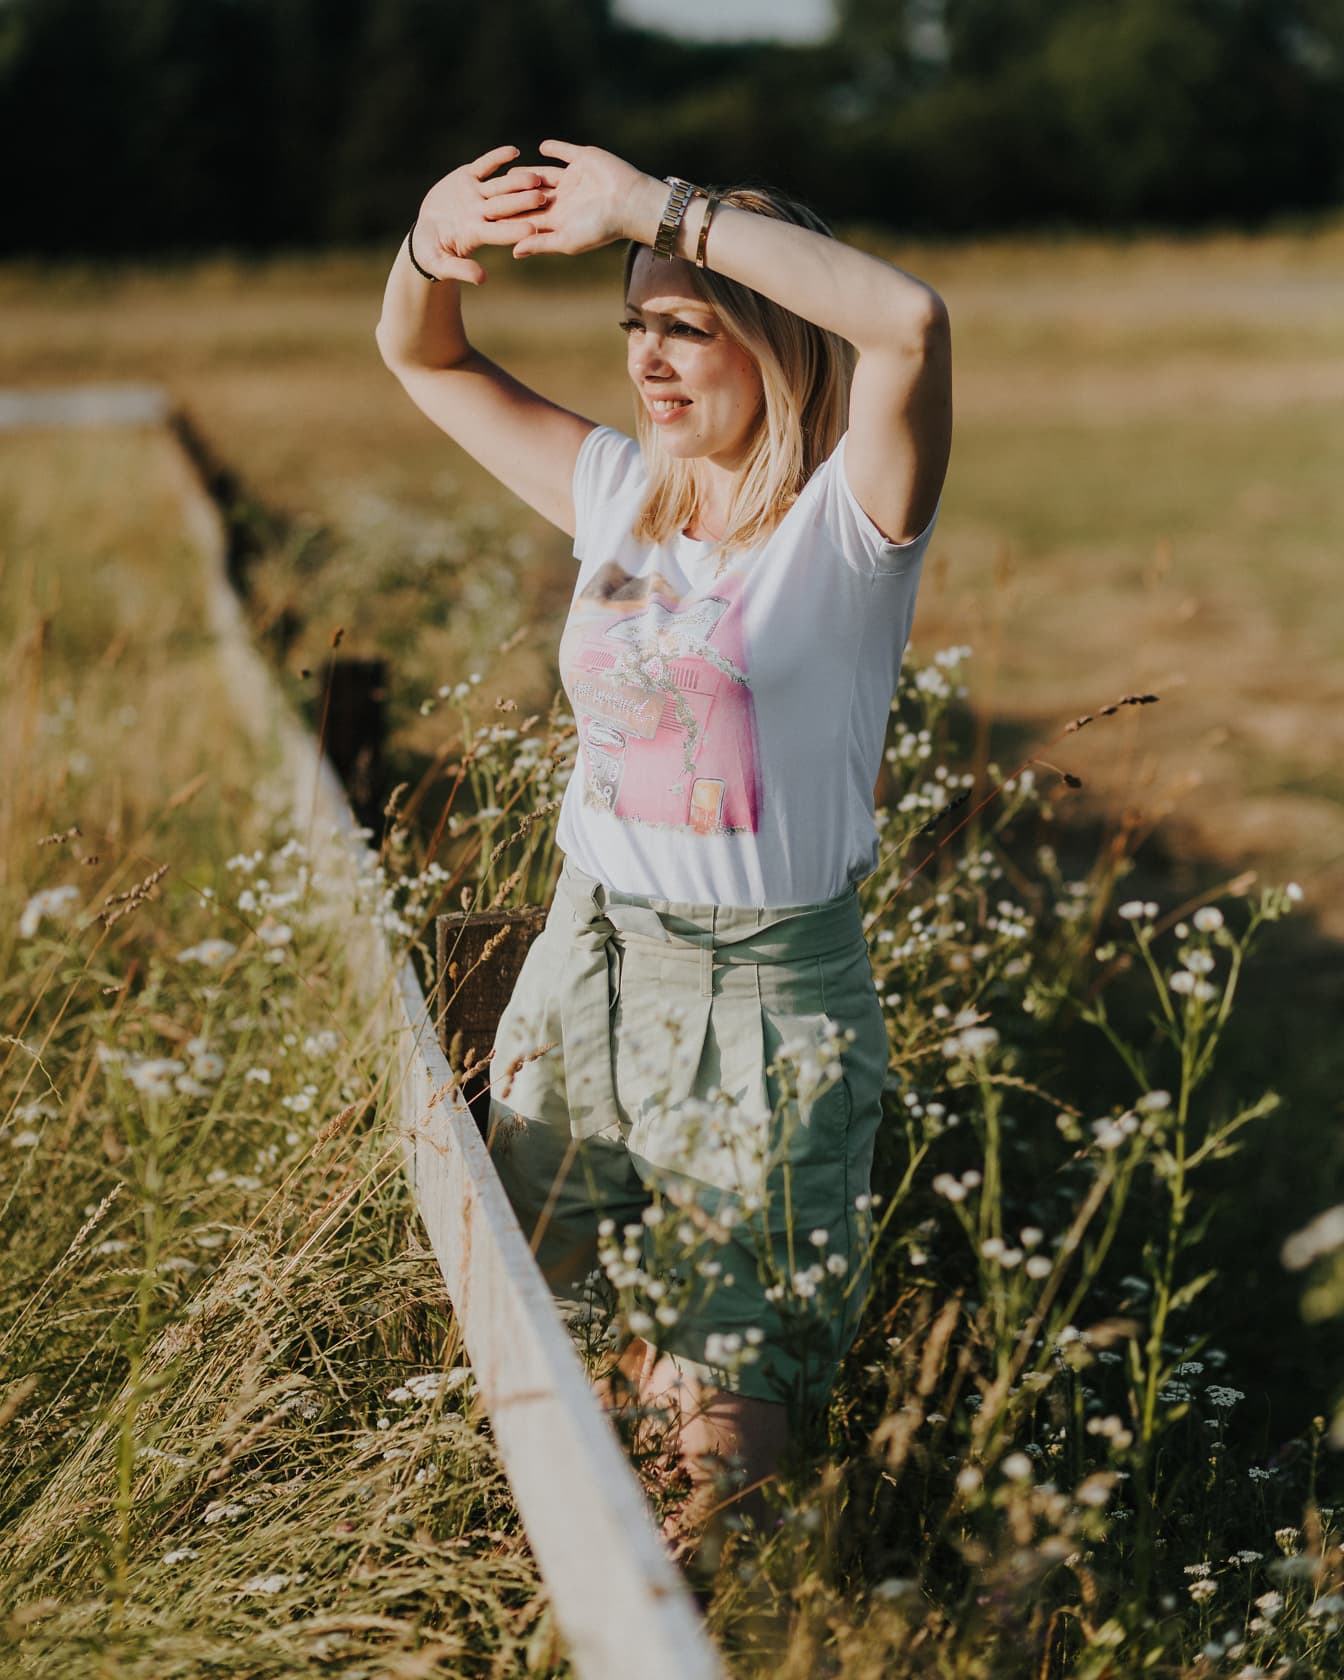 Blid bondekvinne som står i en hage på landet med hendene i været